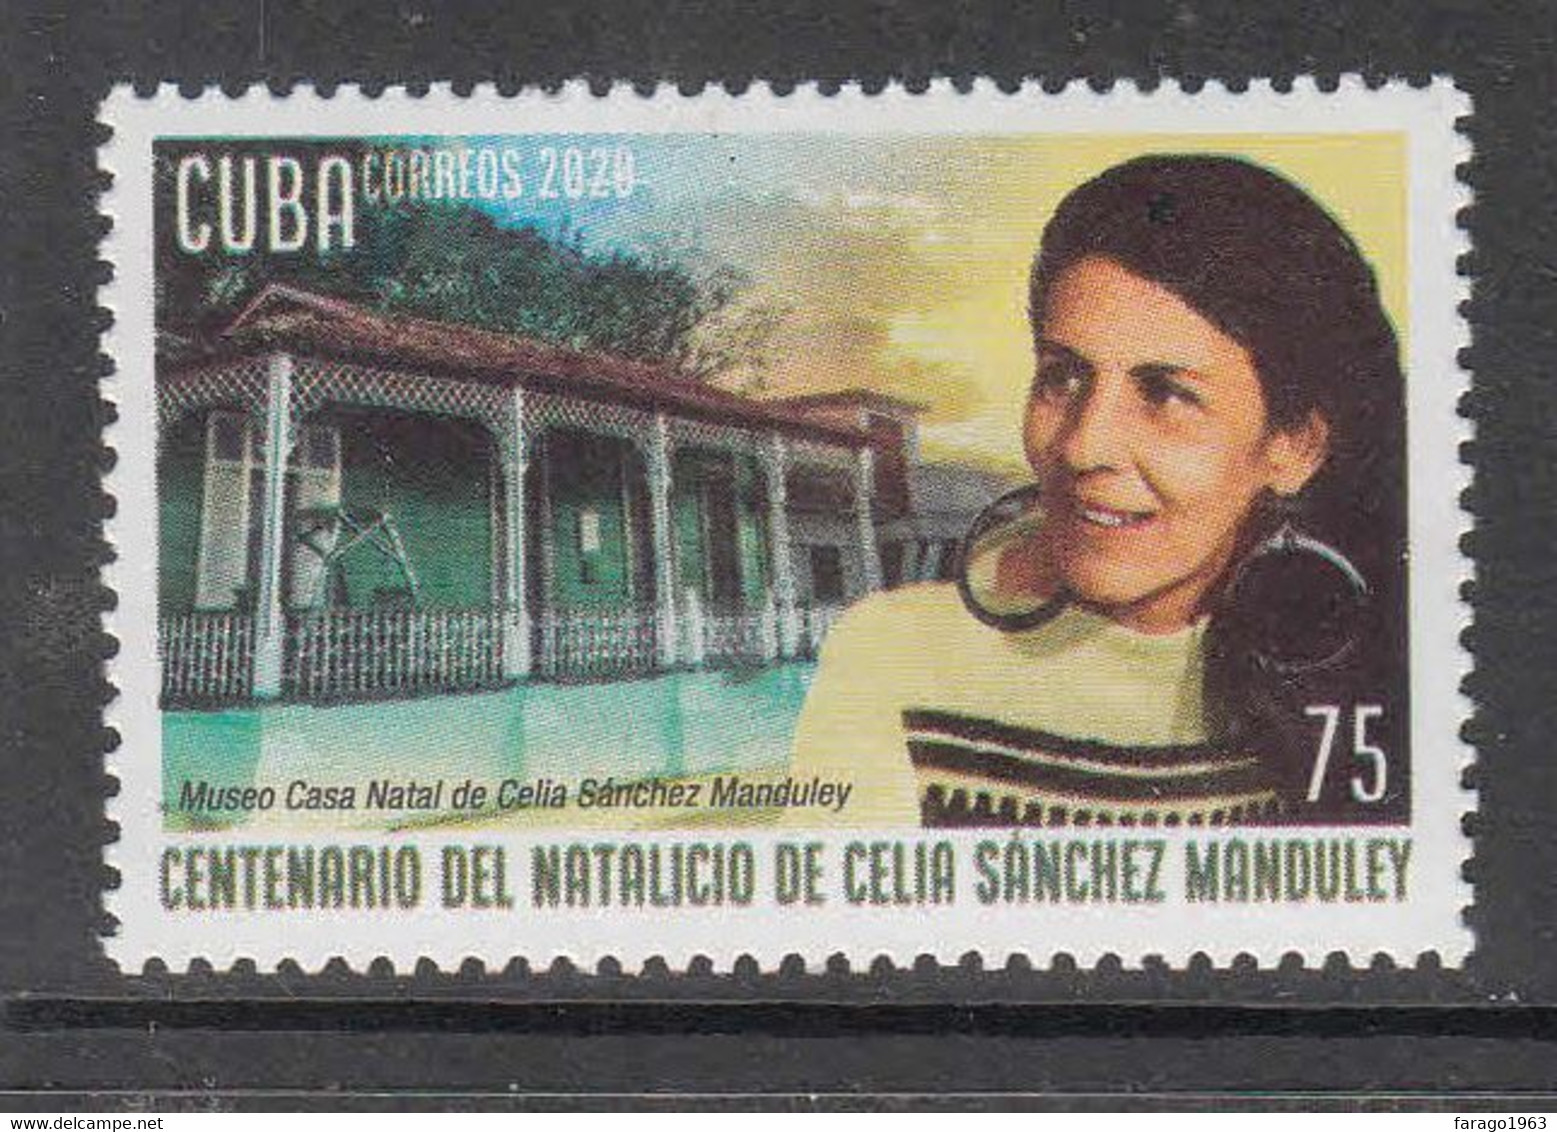 2020 Cuba Manduley Complete Set Of 1 MNH - Neufs